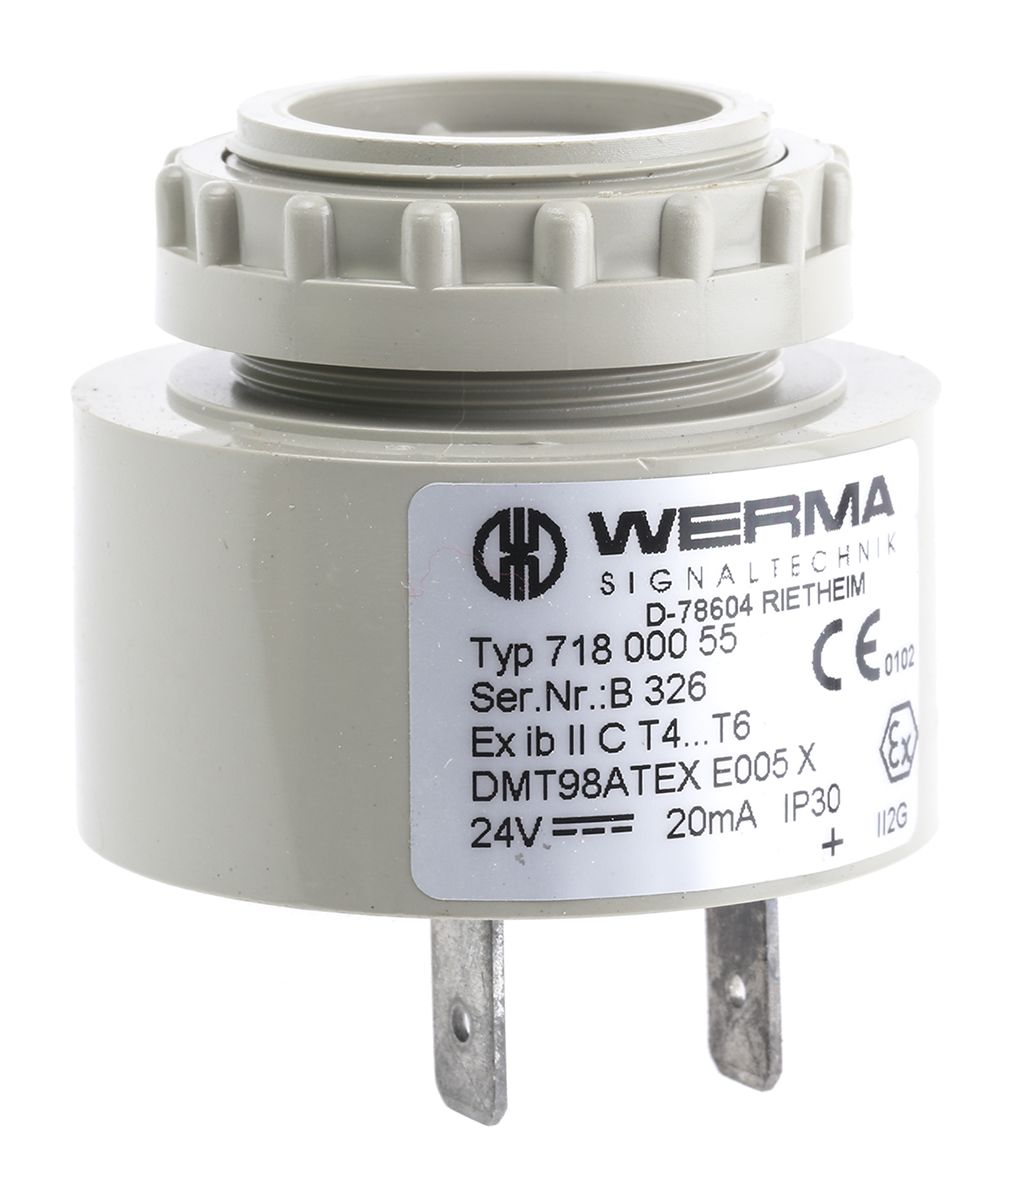 Werma Grey Buzzer, 24 V, 90dB at 1 Metre, Panel Mount, IP30